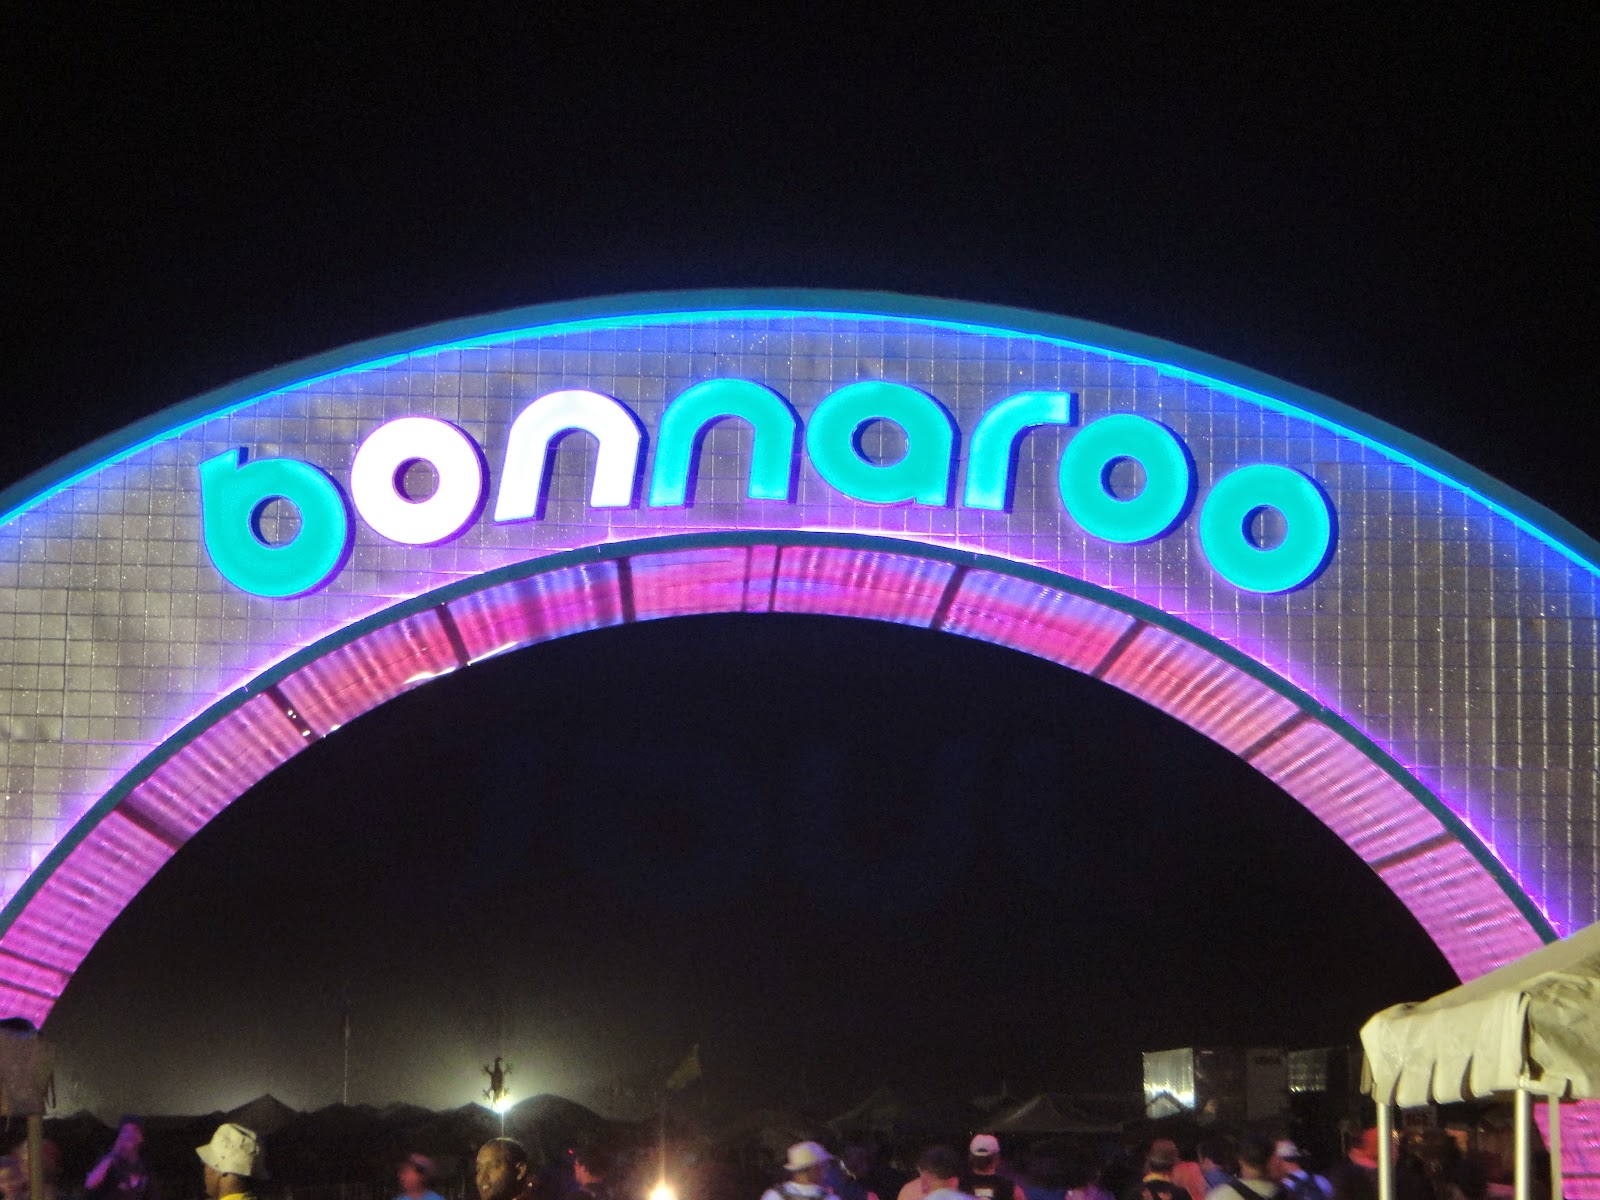 Bonnaroo arch at night 2012